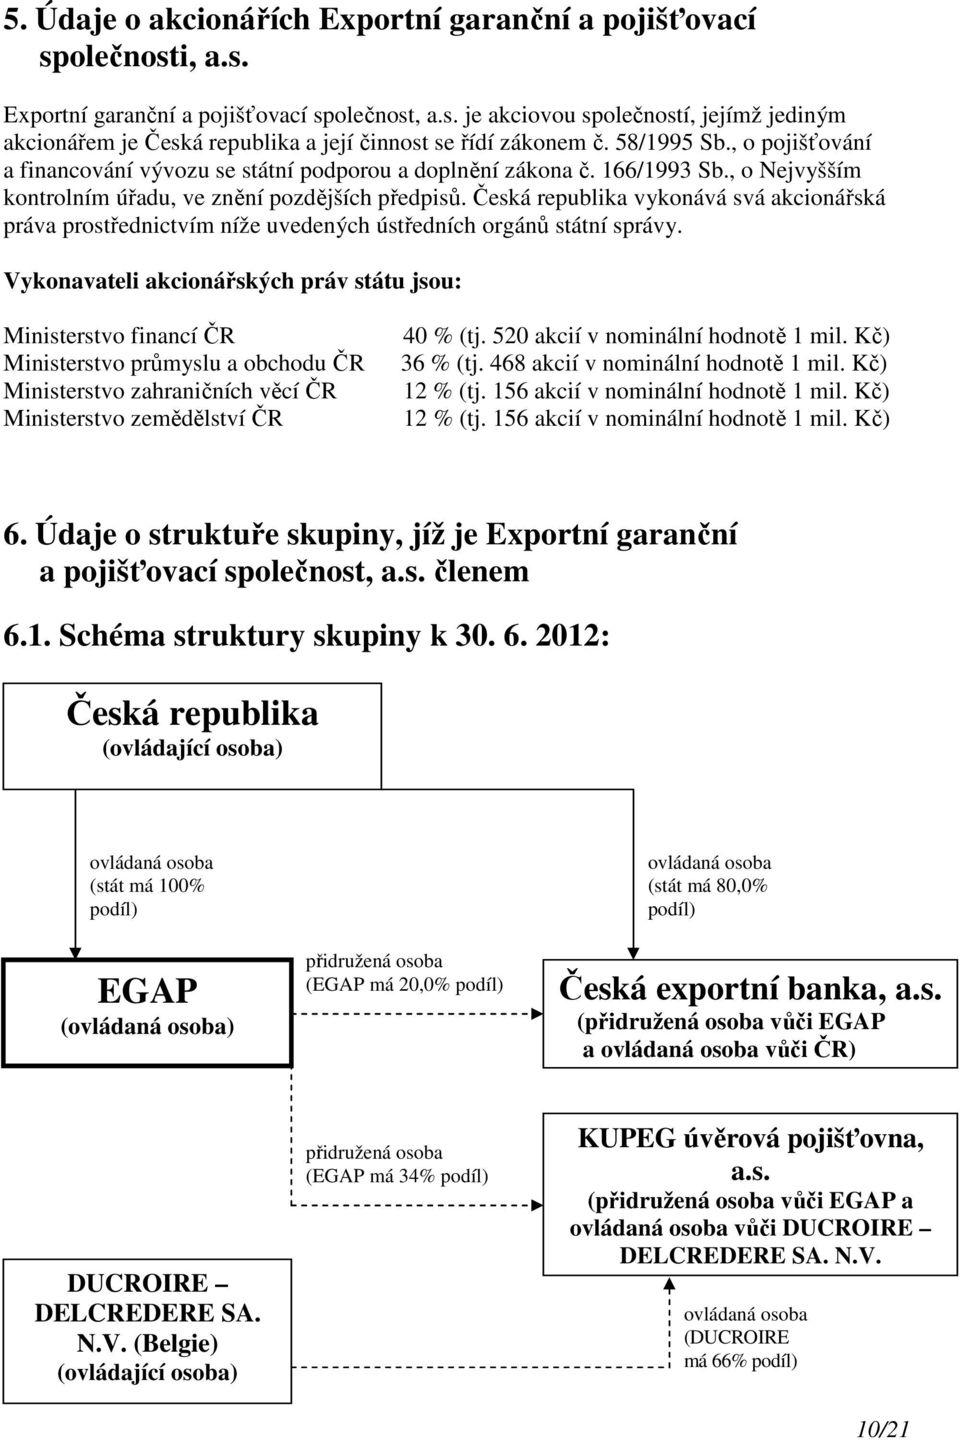 Česká republika vykonává svá akcionářská práva prostřednictvím níže uvedených ústředních orgánů státní správy.